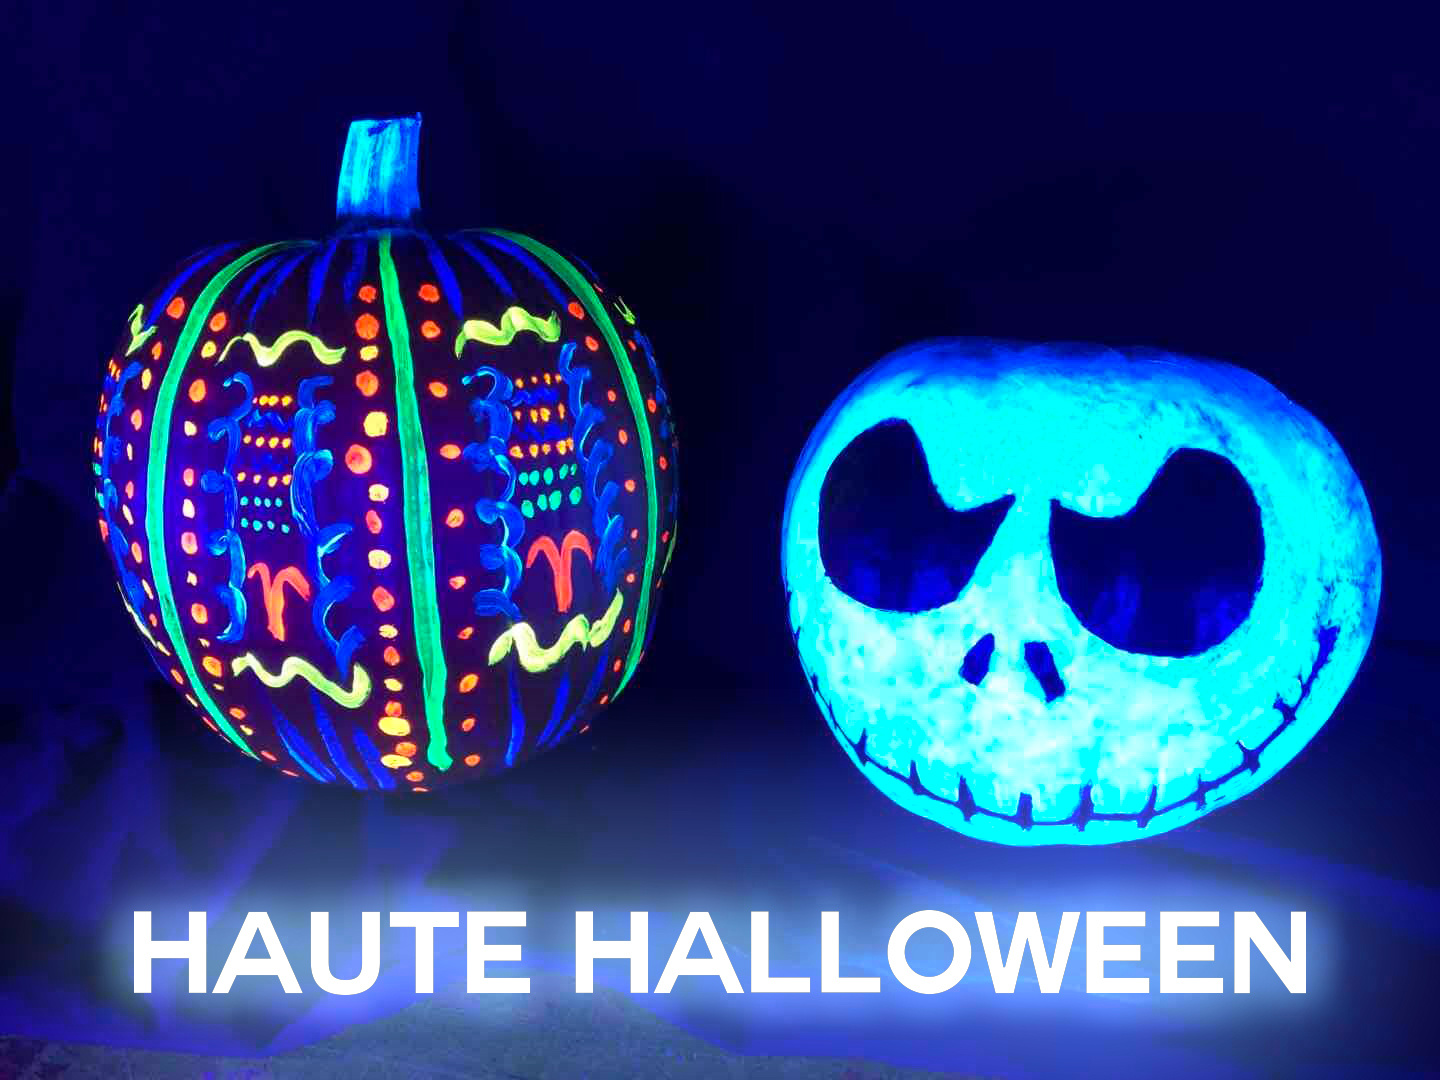 Haute Halloween Pumpkin Art with W.A. Portman